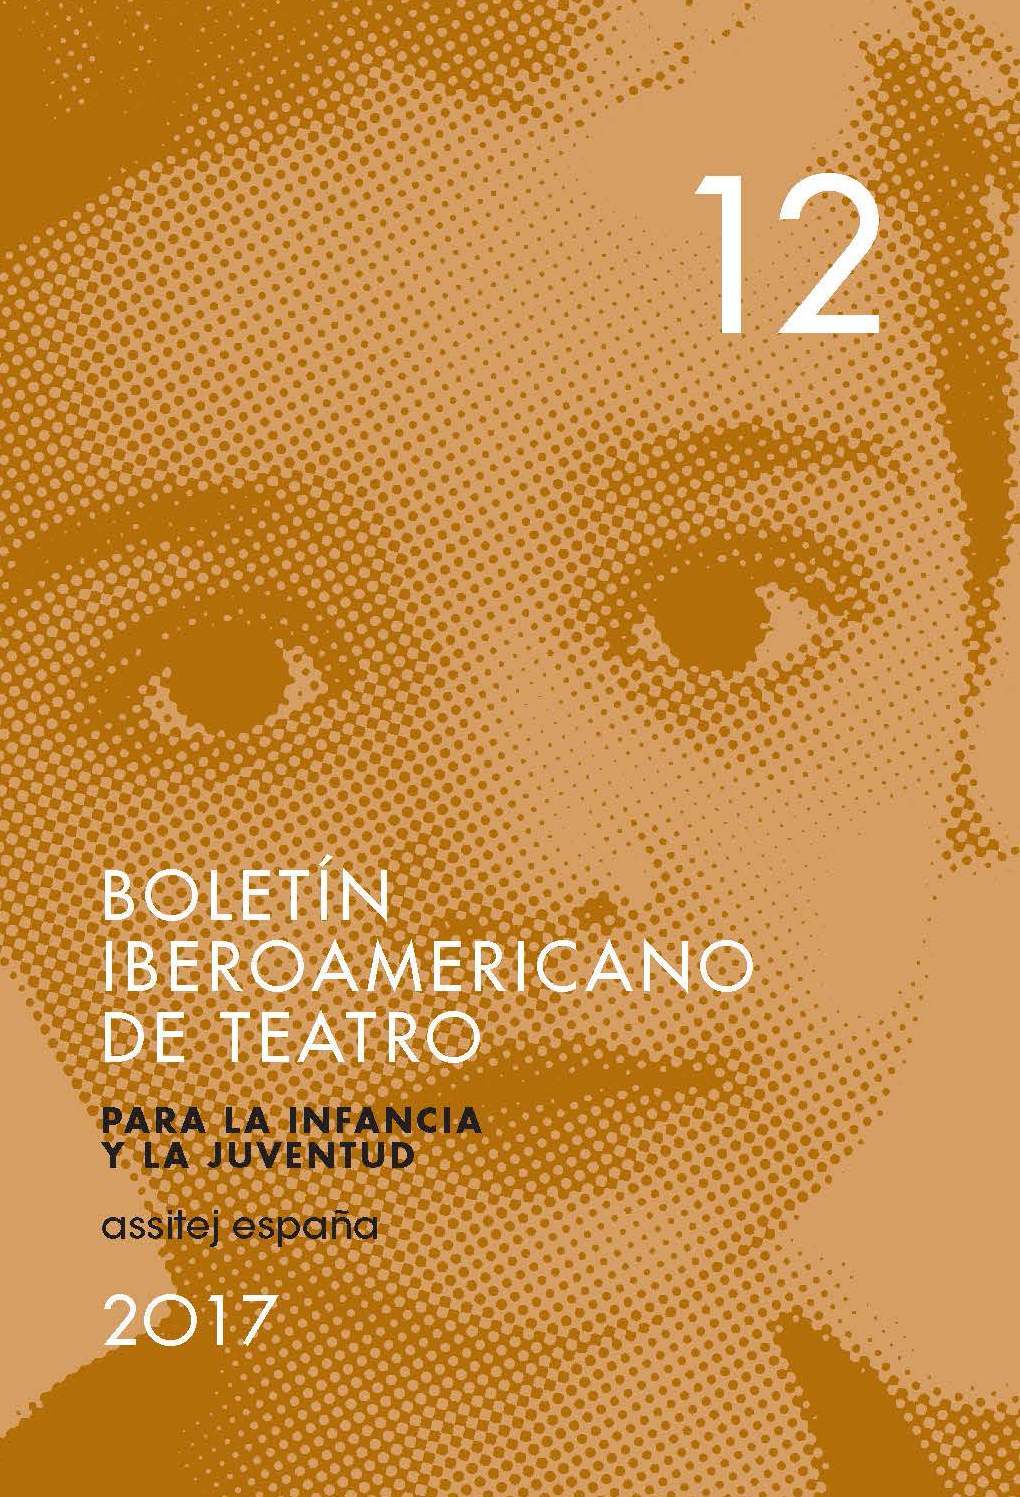 Boletín Iberoamericano de teatro 12